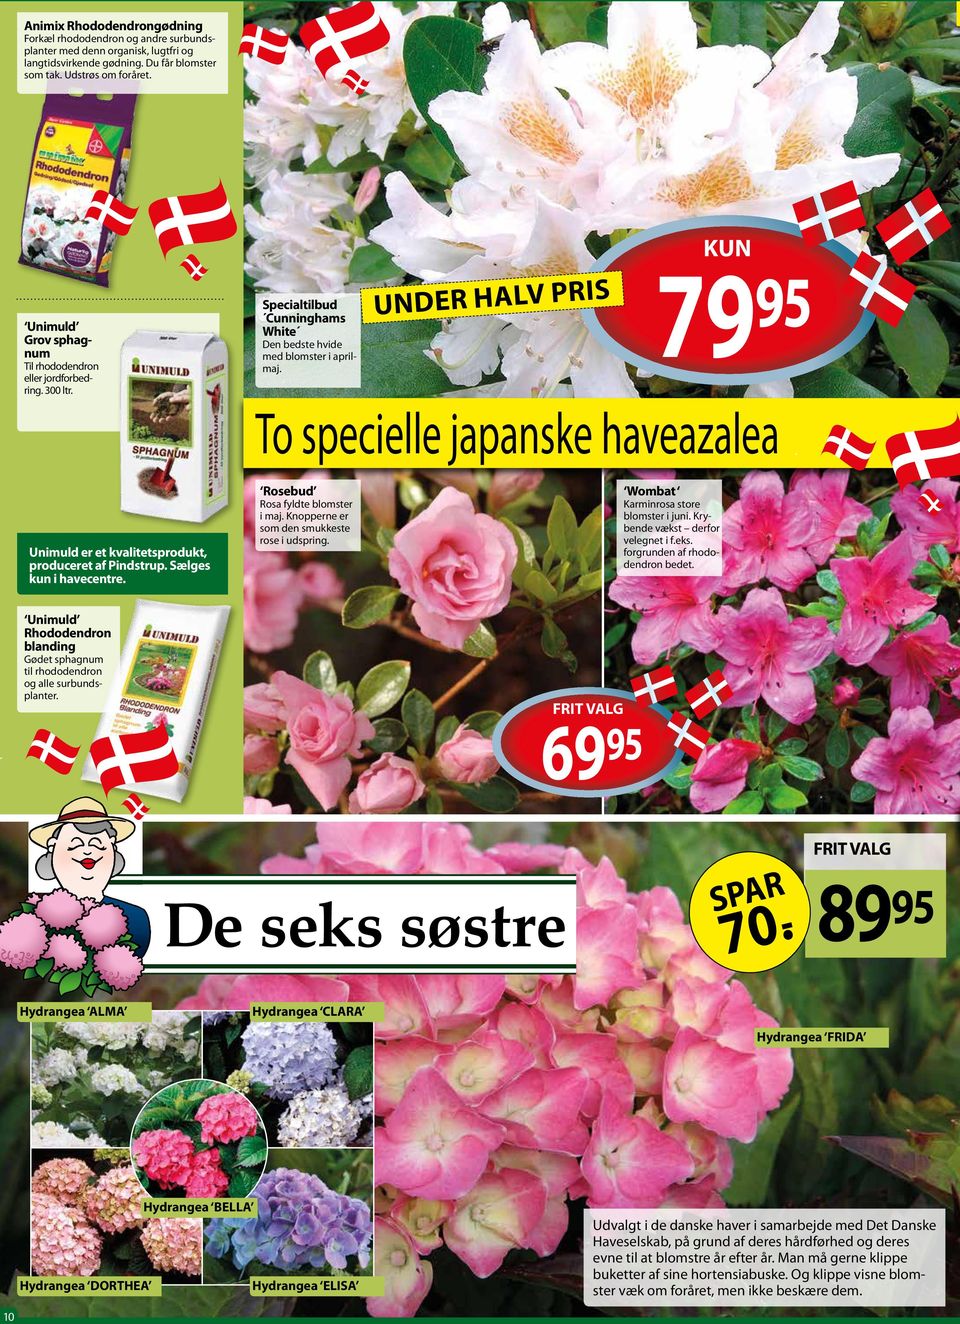 79 Under halv pris 95 To specielle japanske haveazalea Unimuld er et kvalitetsprodukt, produceret af Pindstrup. Sælges kun i havecentre. Rosebud Rosa fyldte blomster i maj.